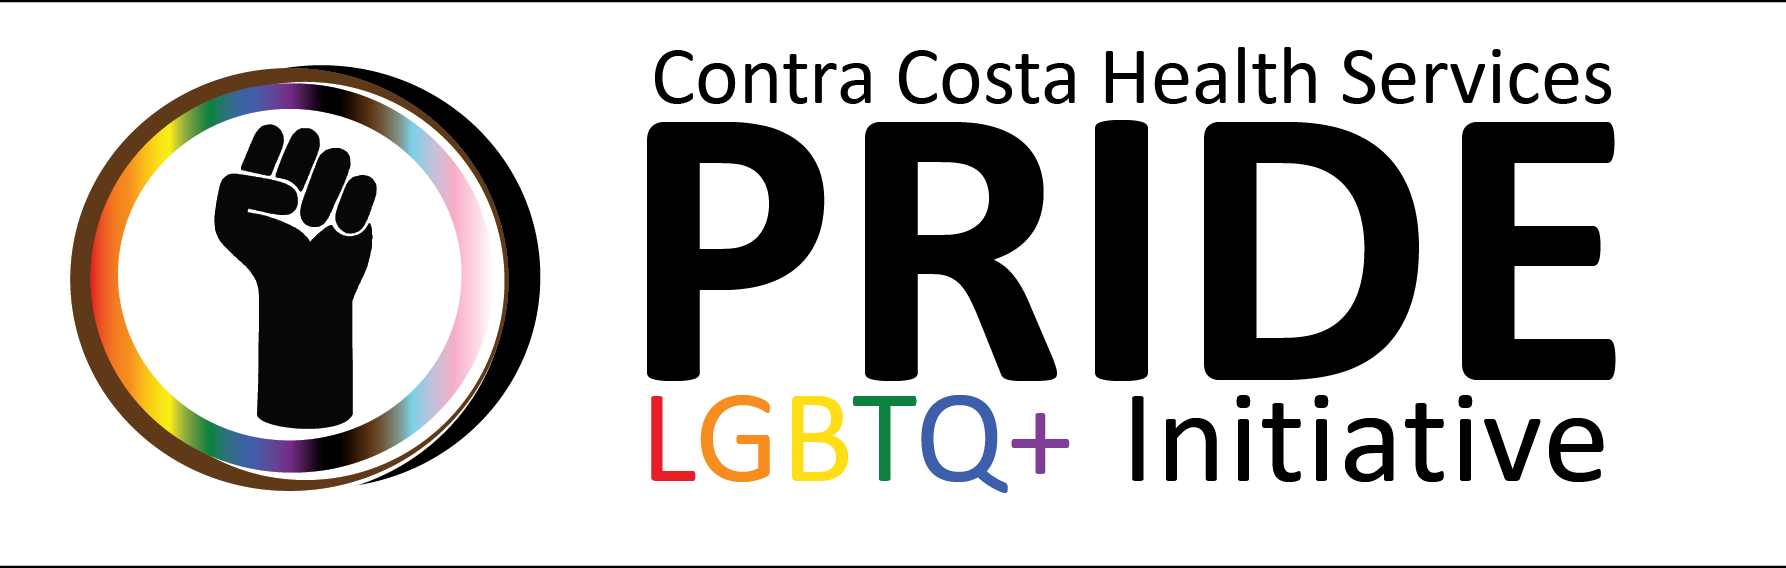 Contra Costa Pride initiative logo.png